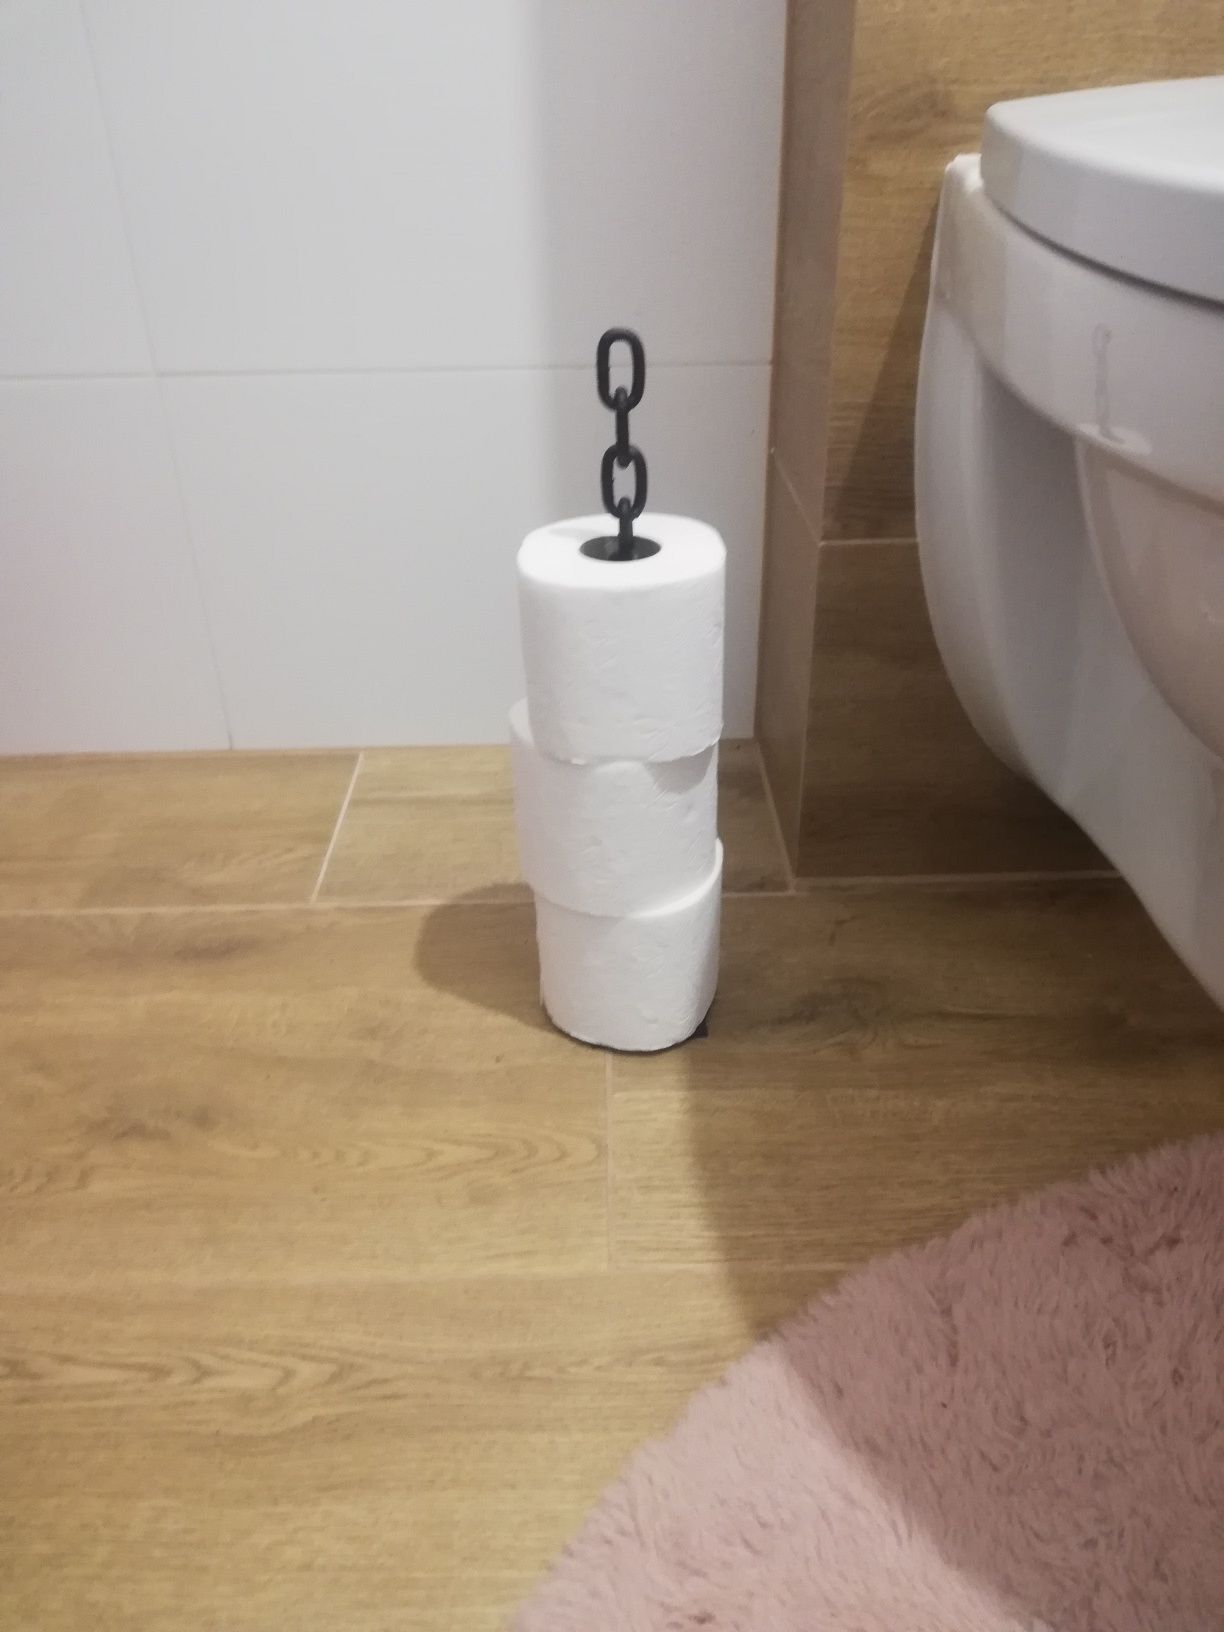 Stojak na ręcznik papierowy /papier toaletowy